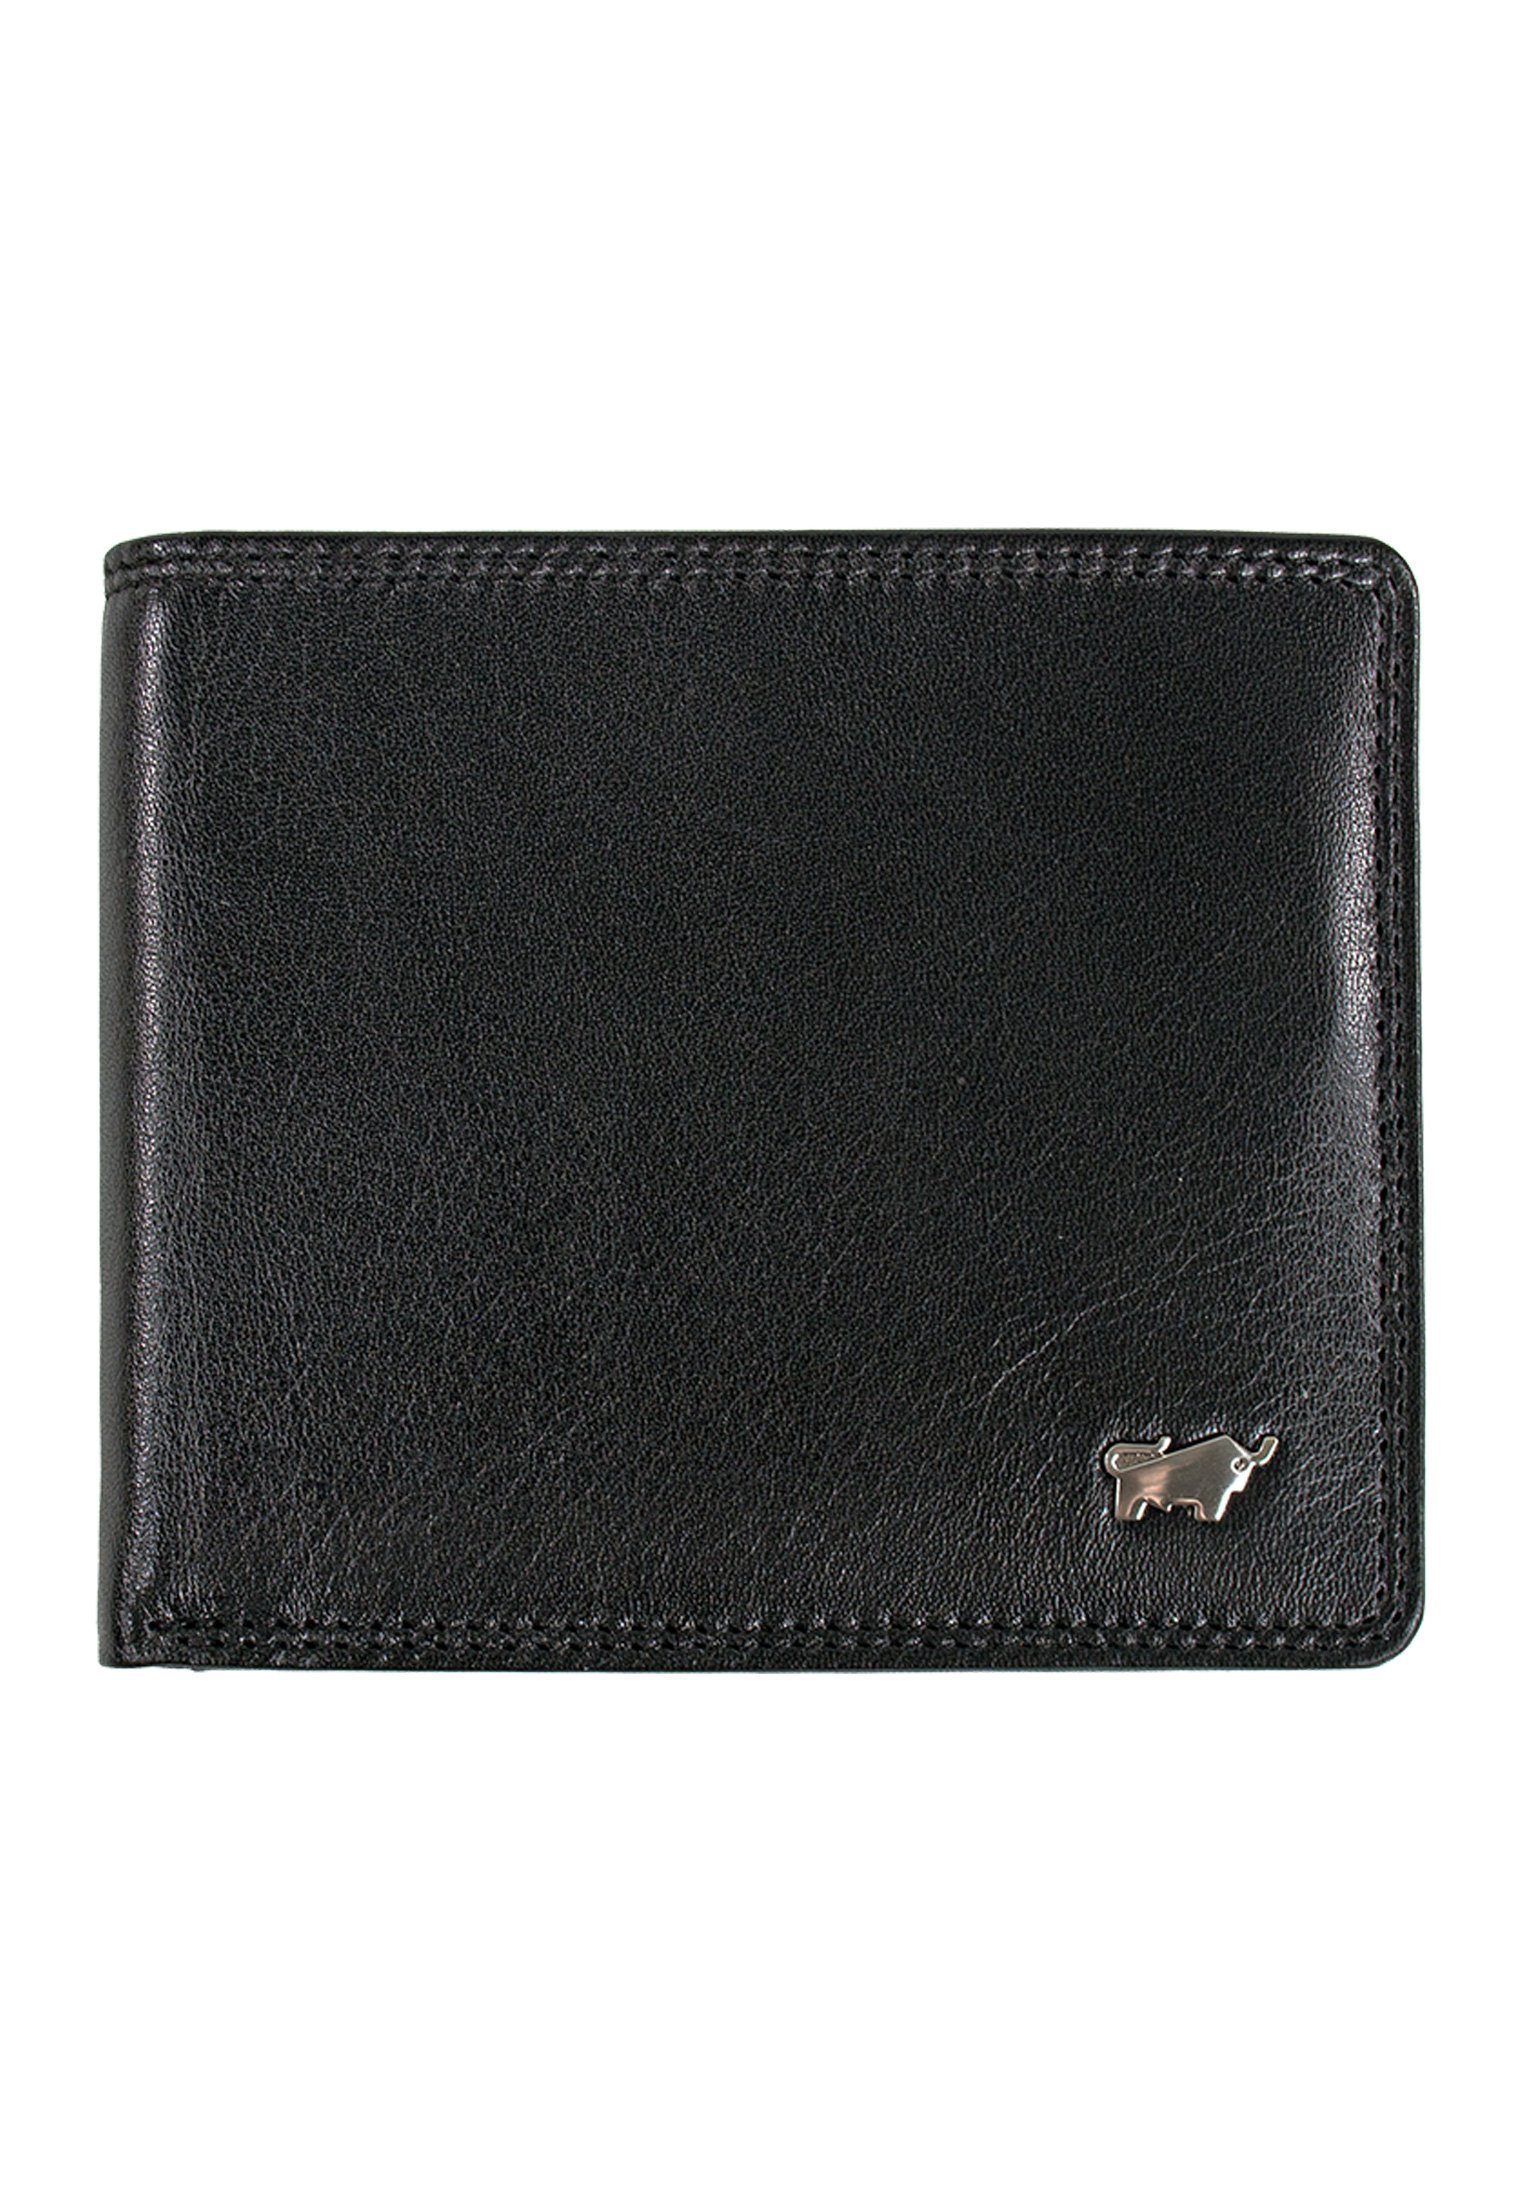 Braun Büffel mit Geldbörse schwarz, GOLF und RFID-Schutz Kartenbörse Kartenfächern SECURE 8 8CS